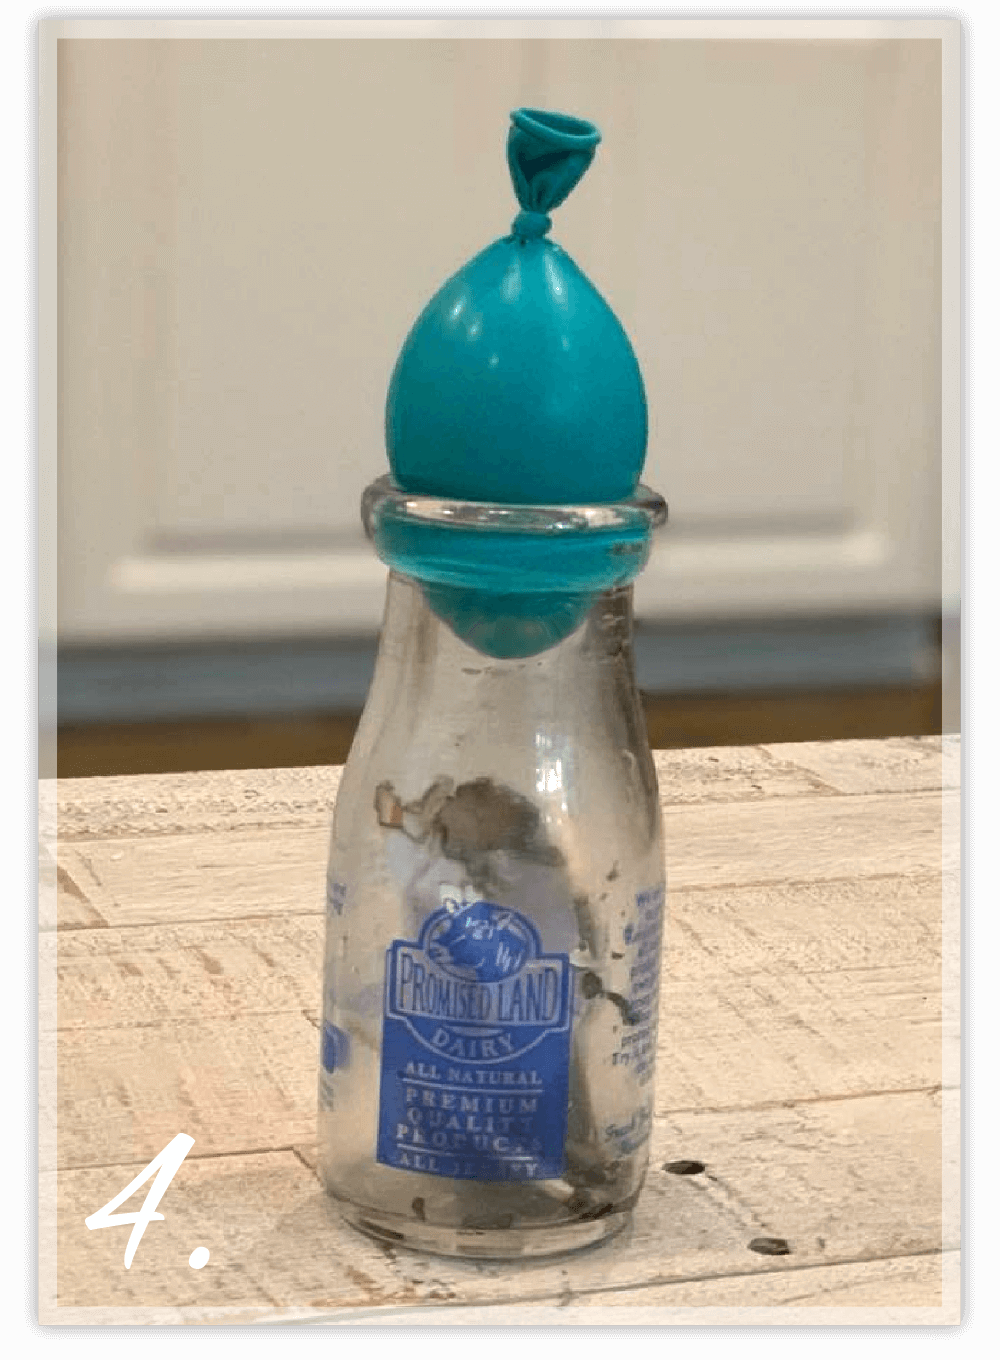 Balloon sucked into glass bottle